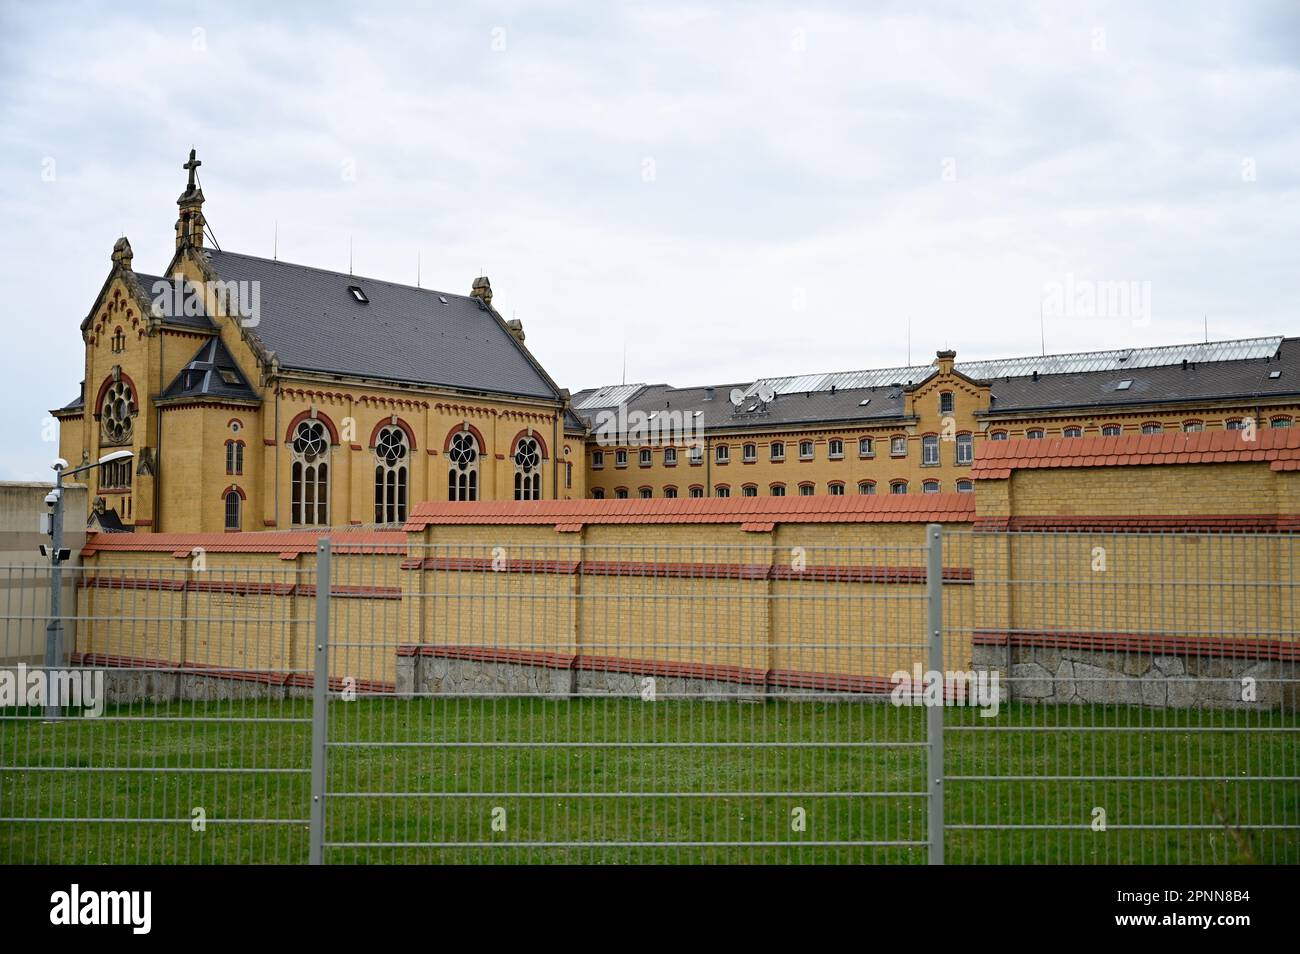 Die Justizvollzugsanstalt Bautzen ist eine Justizvollzugsanstalt (JVA) im sächsischen Bautzen. Sie befindet sich seit 1990 im Gebäude der Haftanstalt Stock Photo